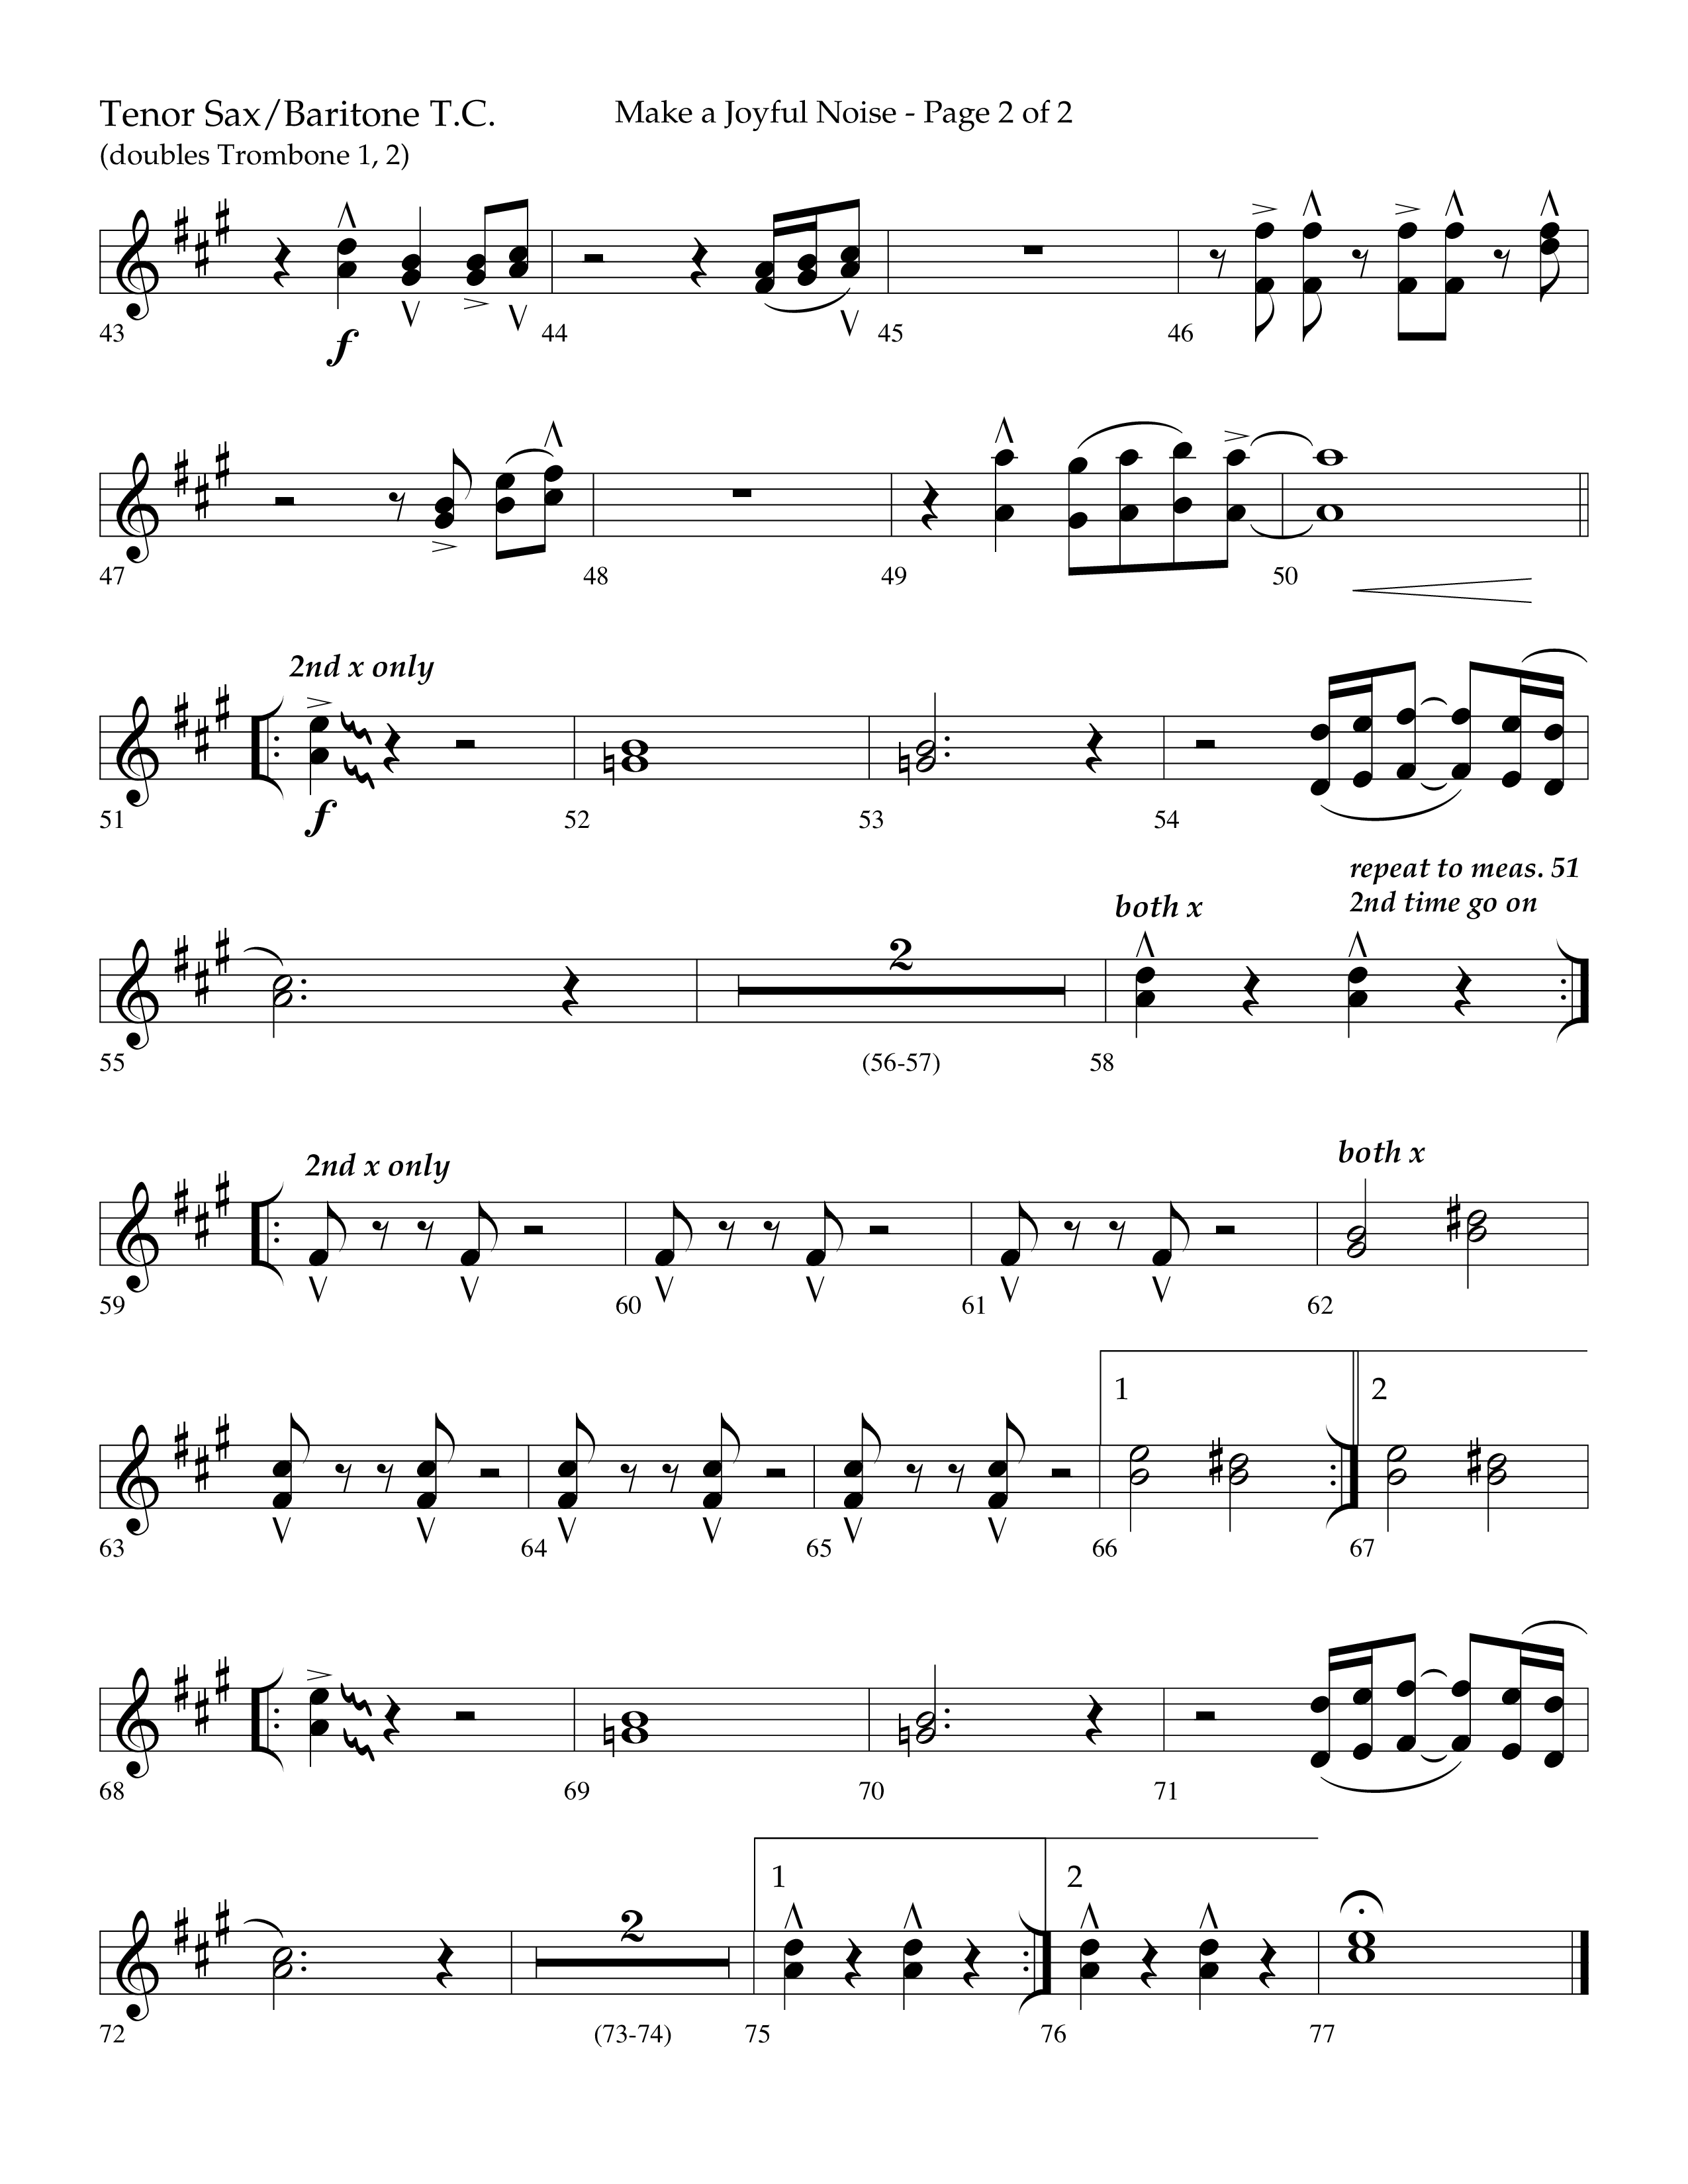 Make A Joyful Noise (Choral Anthem SATB) Tenor Sax/Baritone T.C. (Lifeway Choral / Arr. David Wise / Orch. Daniel Semsen)